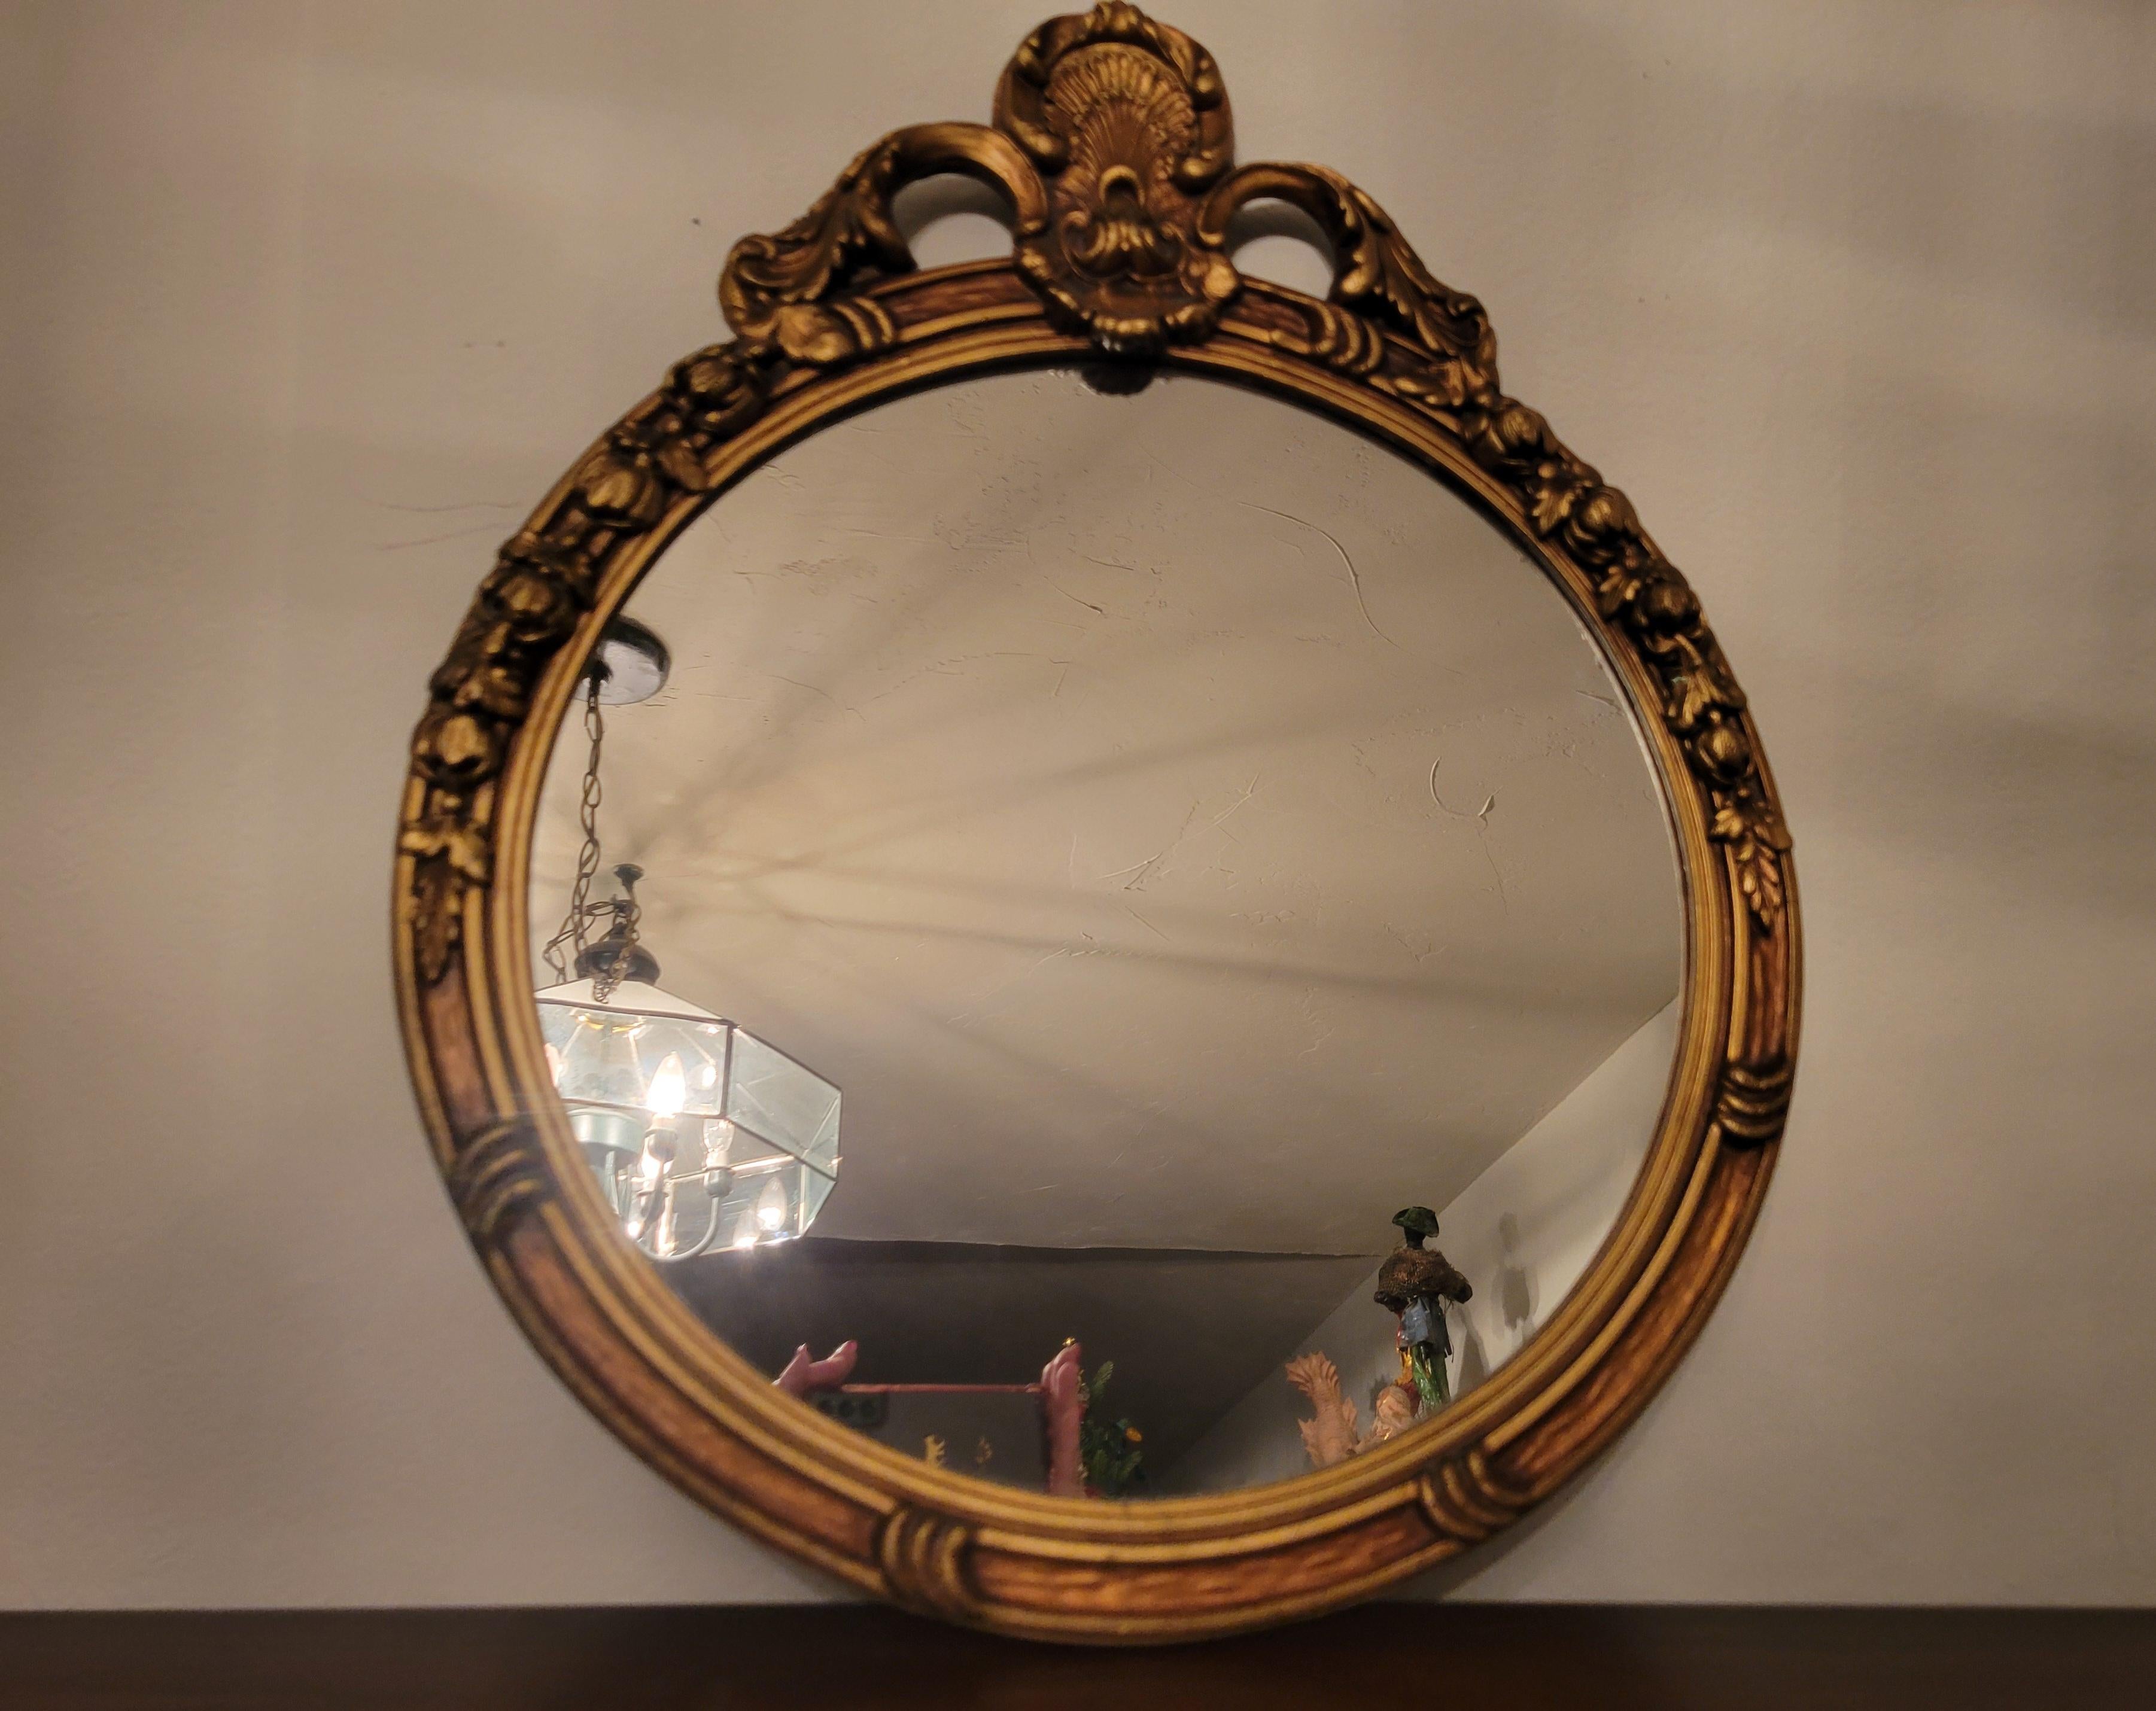 Miroir ancien dans un cadre en bois guildé sculpté à la main.  Le miroir avec le cadre mesure 18